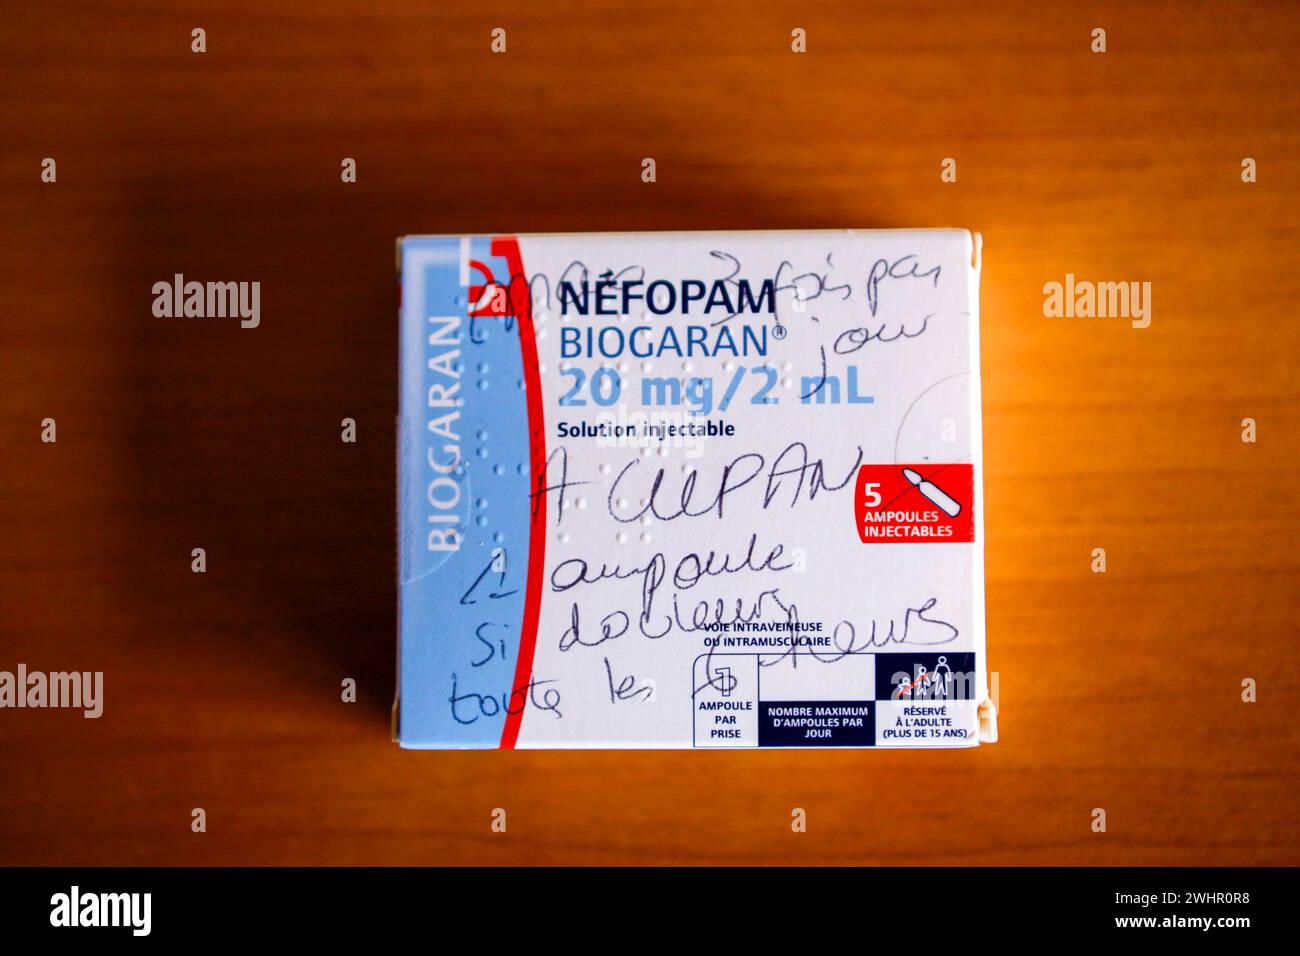 Confezione francese di Nefopam - antidolorifico per dolori da moderati a gravi, con le istruzioni del farmacista scritte sulla scatola. Foto Stock